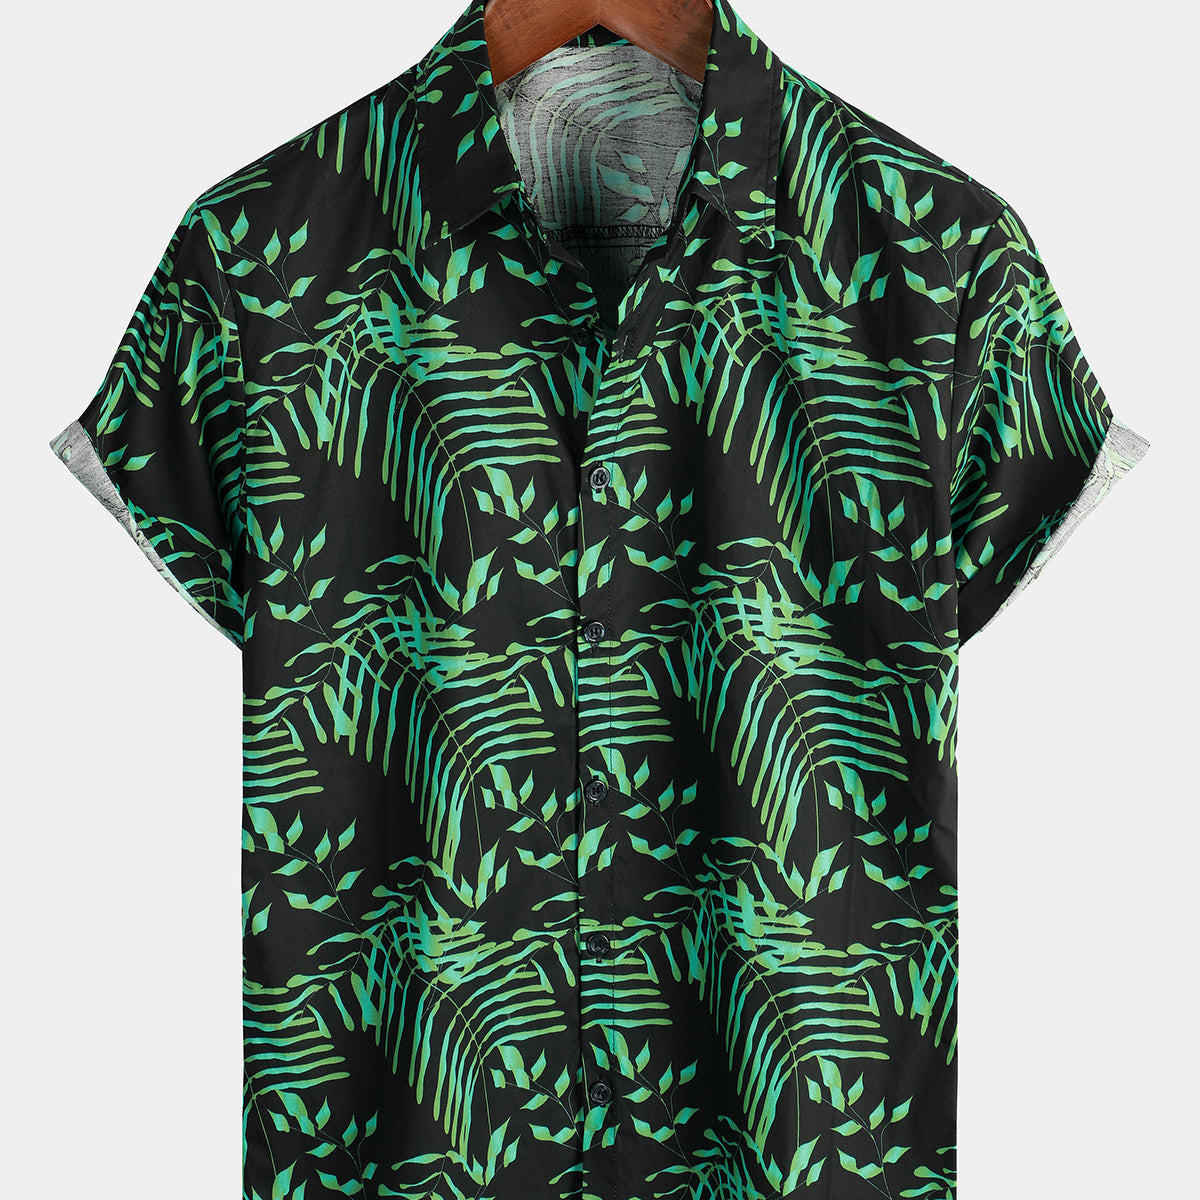 Chemise hawaïenne à manches courtes avec bouton de feuilles de plantes vertes tropicales pour hommes